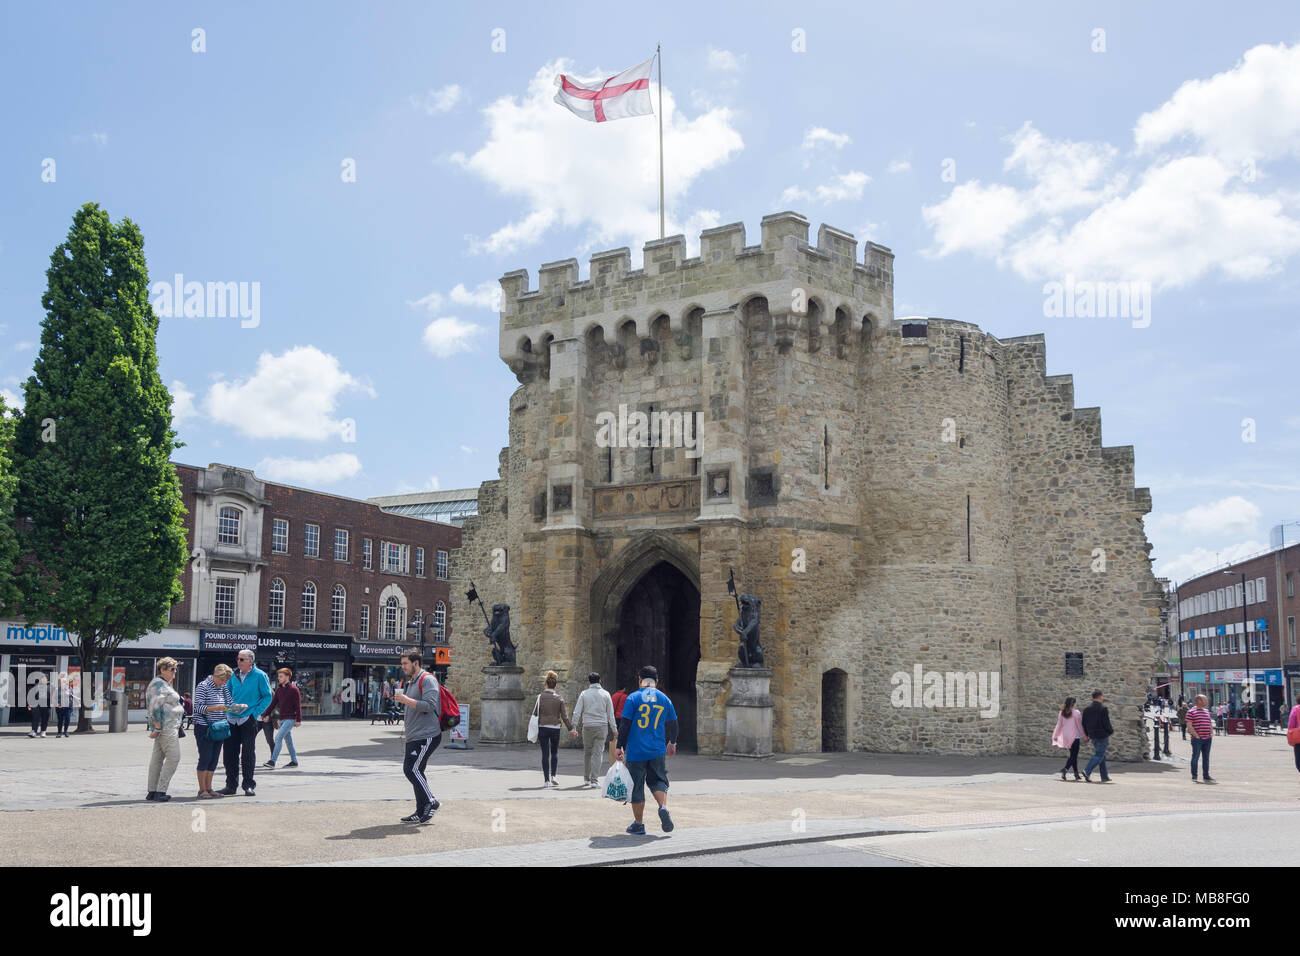 Le 12ème siècle de Bargate au-dessus de Bargate Street, Old Town, Southampton, Hampshire, Angleterre, Royaume-Uni Banque D'Images